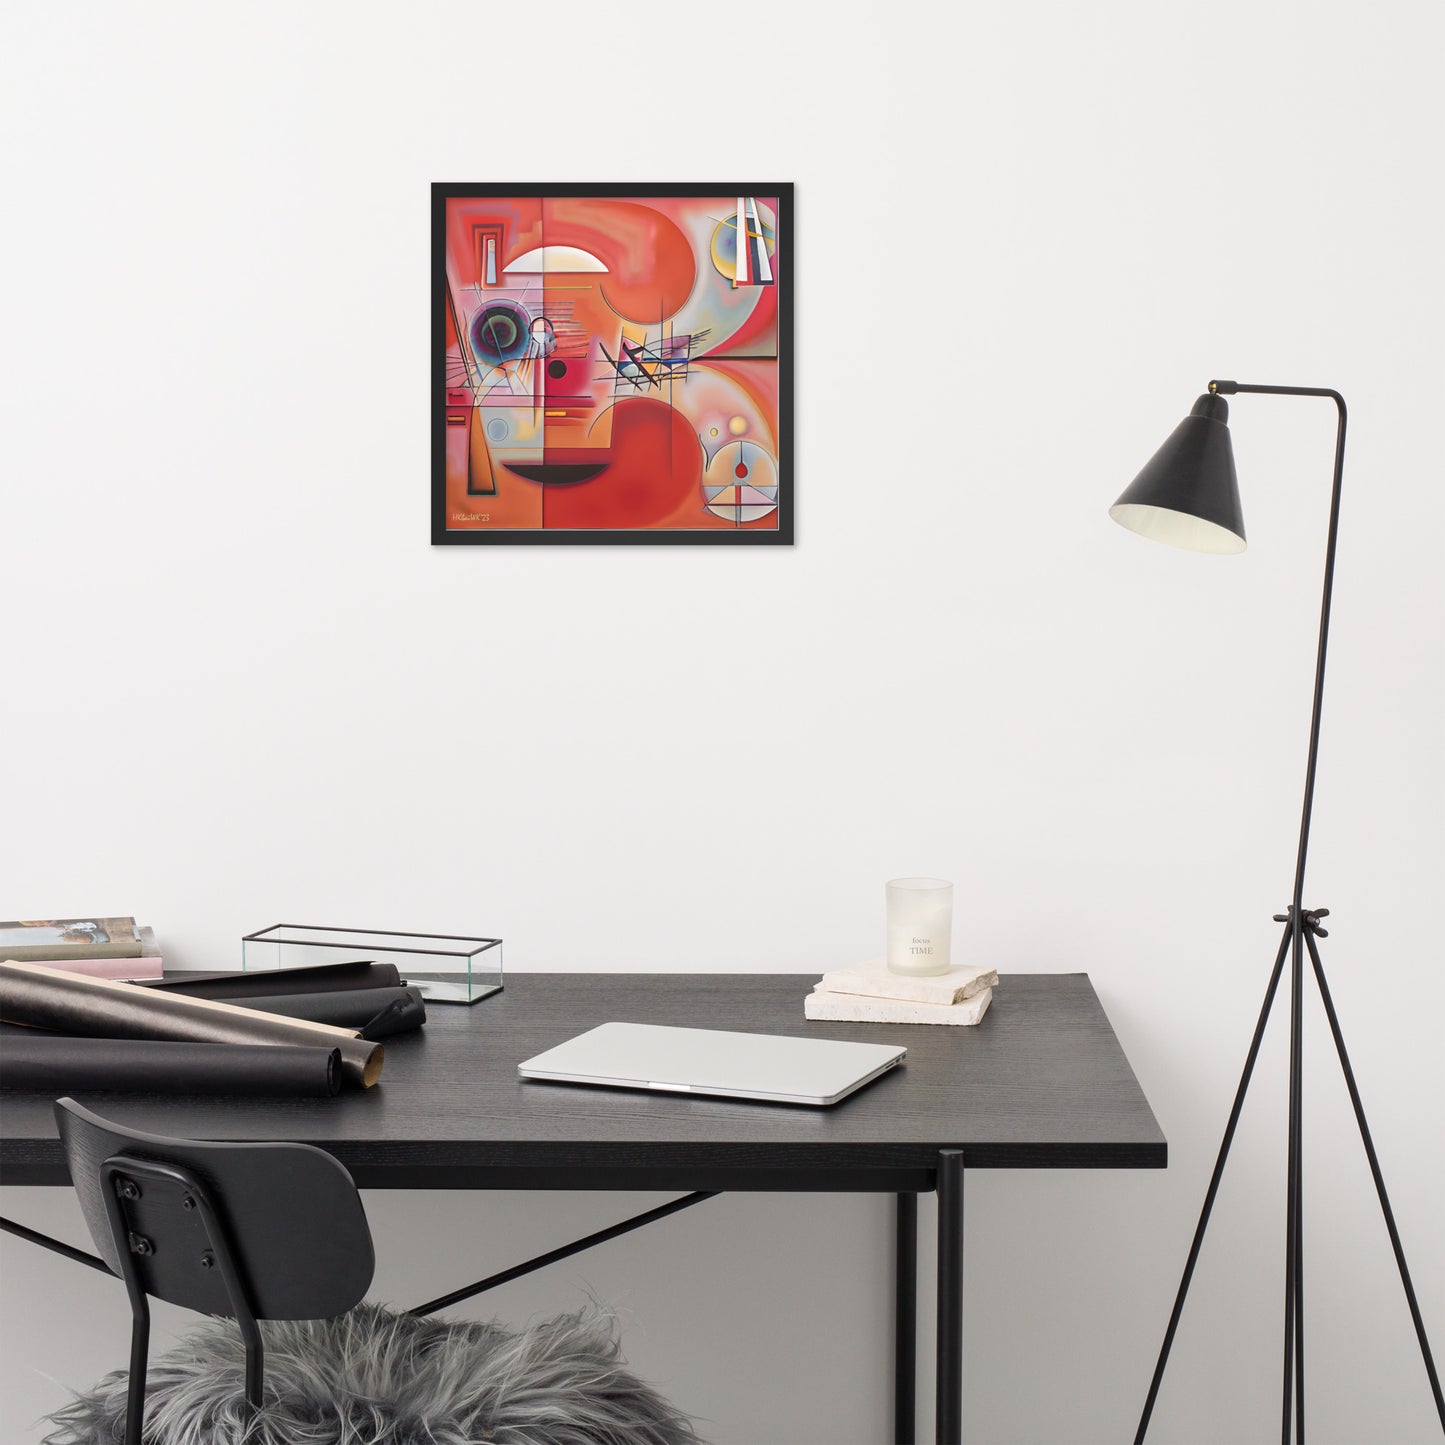 Klint's The Swan No 9 bai Kandinsky Framed Poster